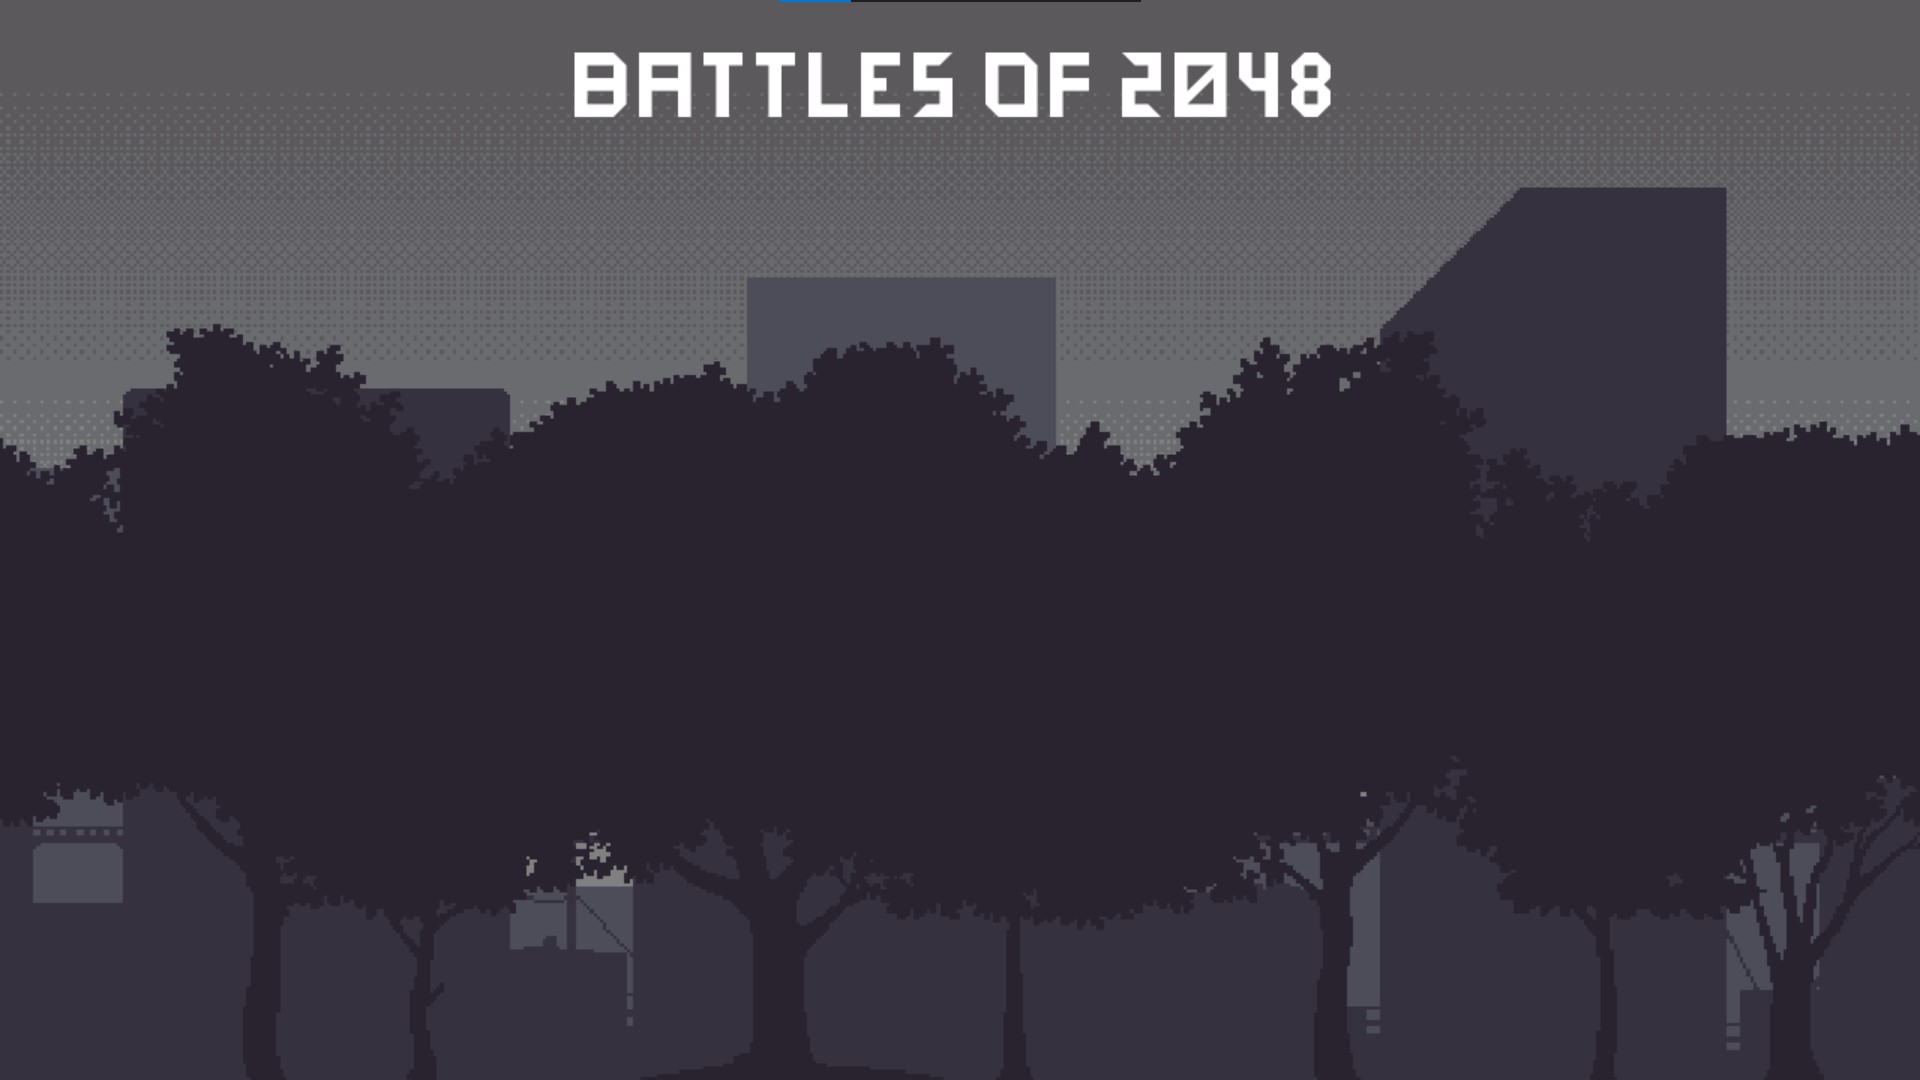 Battles of 2048